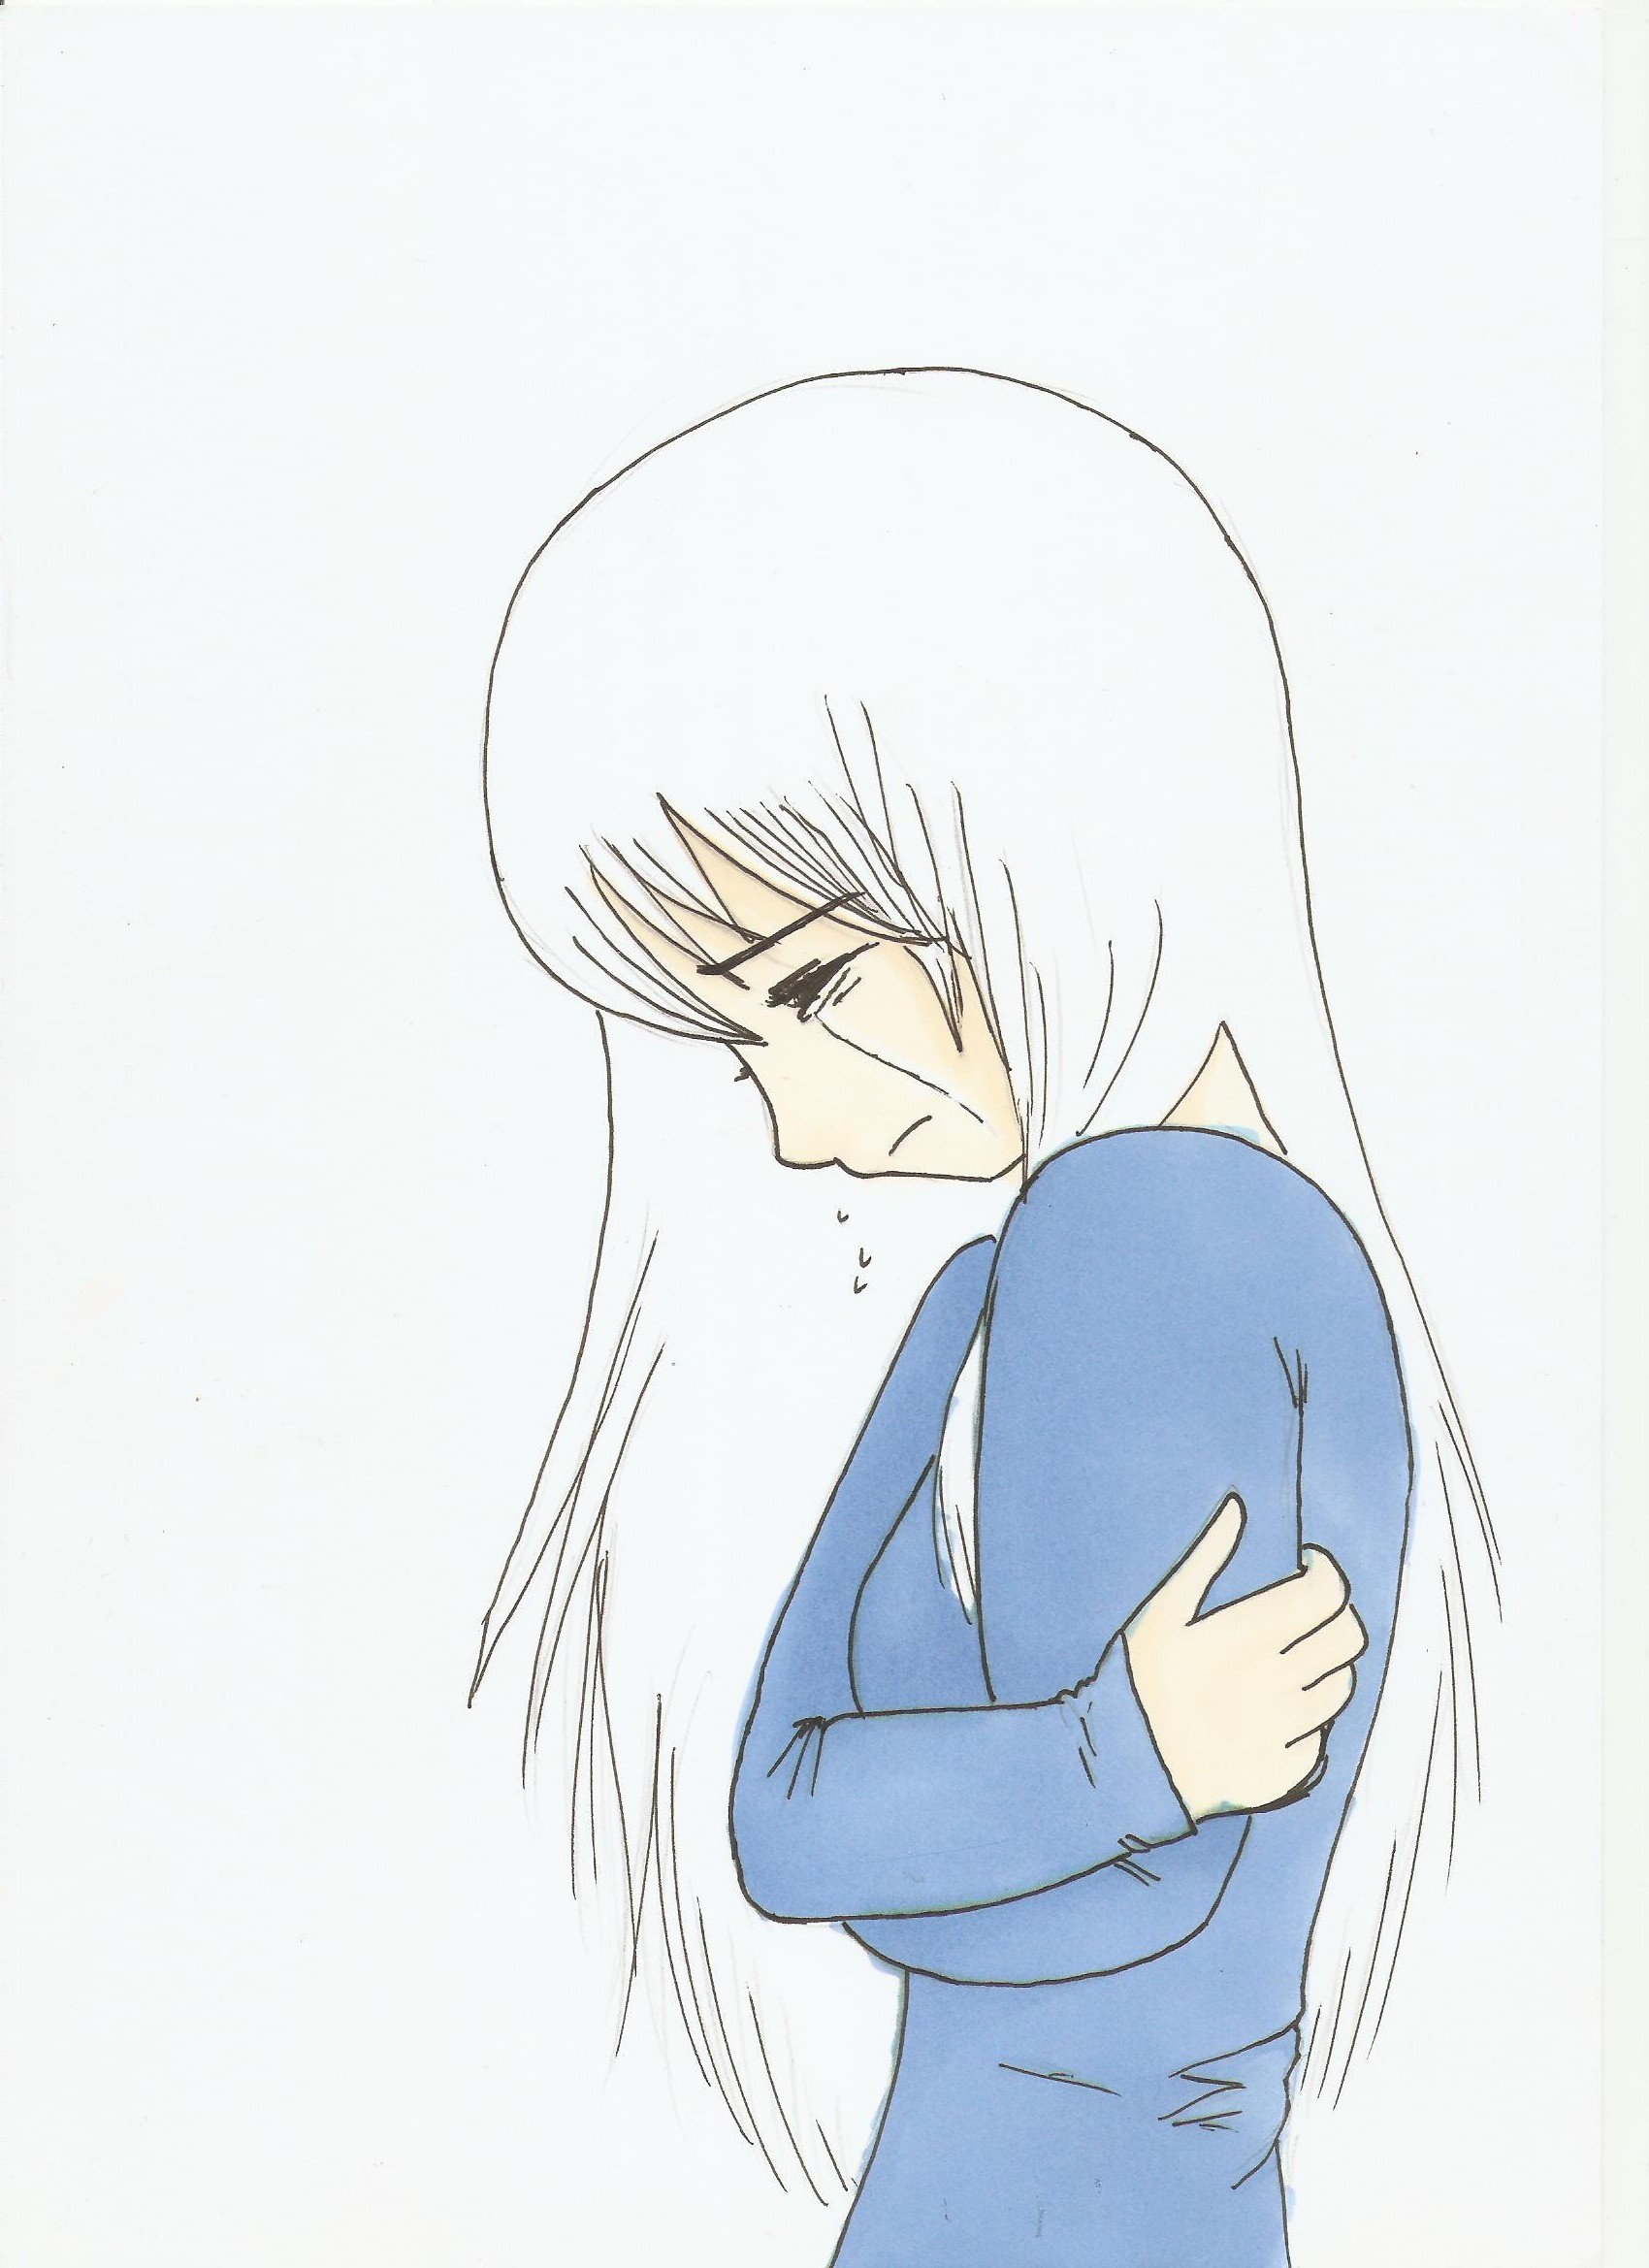 Sad Anime Girl Crying Sketch - Drawing Skill